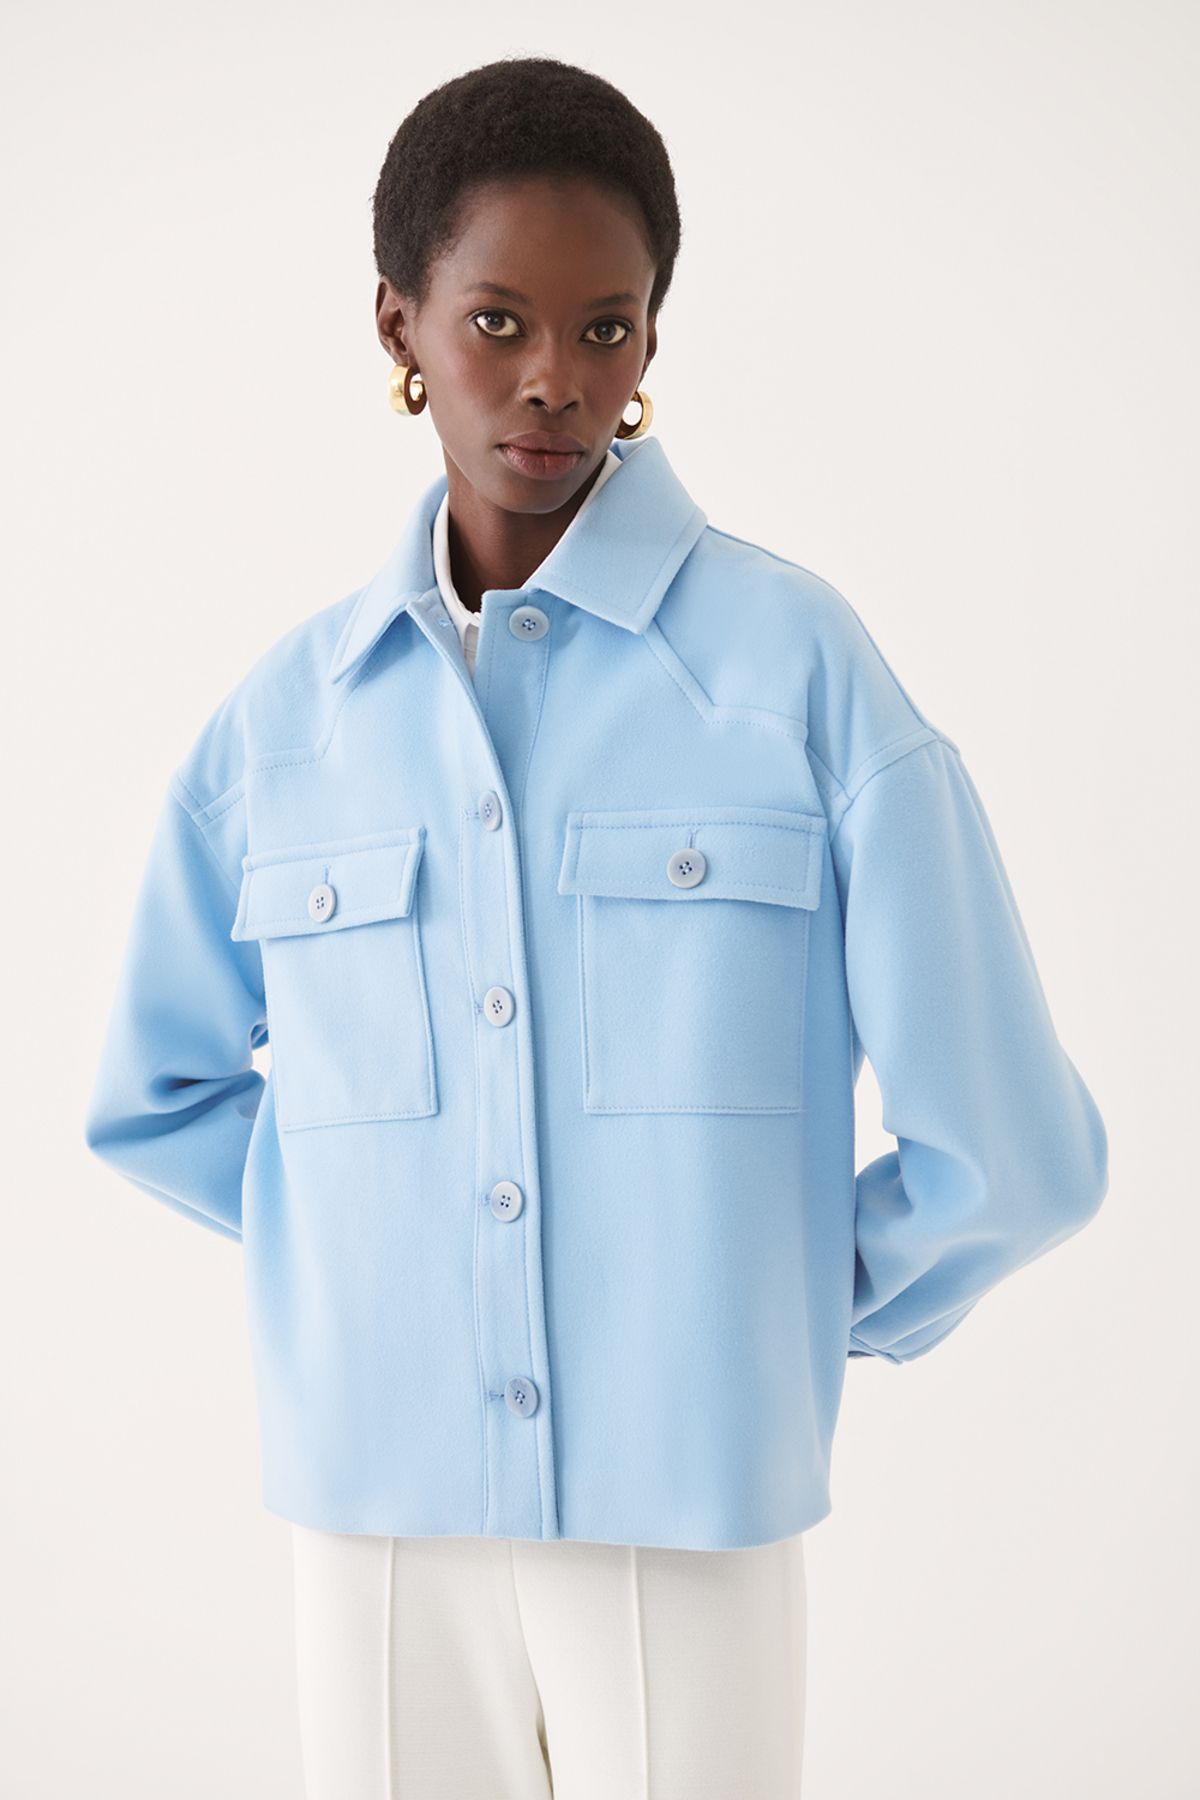 Perspective Anton Rahat Kalıp Gömlek Yaka Standart Boy Mavi Renk Kadın Ceket